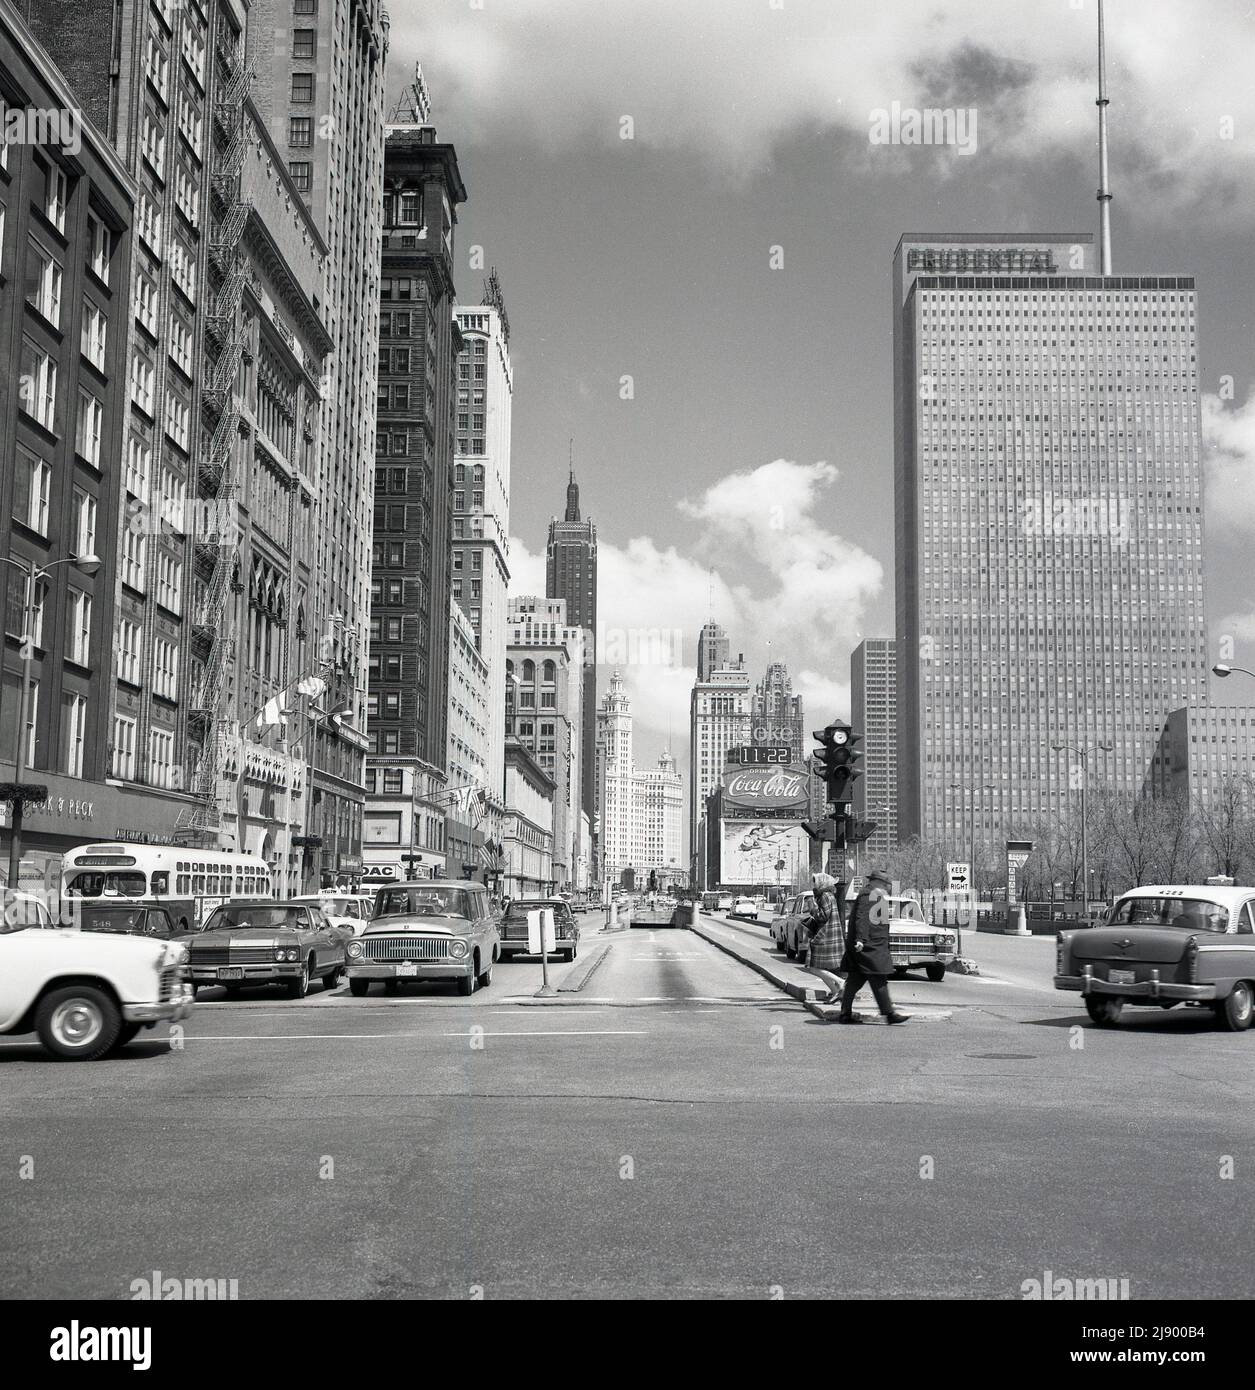 1960s, foto storica di J Allan Cash di N. Michigan Ave, Chicago, USA, che mostra il Maremont Bldg, blocco di uffici Prudential e automobili americane dell'epoca. La sede centrale della Prudential, società di assicurazioni americana, era un edificio di 41 piani completato nel 1955, e il suo significato è che fu il primo grattacielo costruito a Chicago dalla Grande depressione del 1930s e dalla seconda guerra mondiale. L'uscita e l'ingresso del parcheggio sotterraneo del Grant Park (Sud) Garage, un enorme parcheggio comunale con tre piani e 1.800 posti. Foto Stock